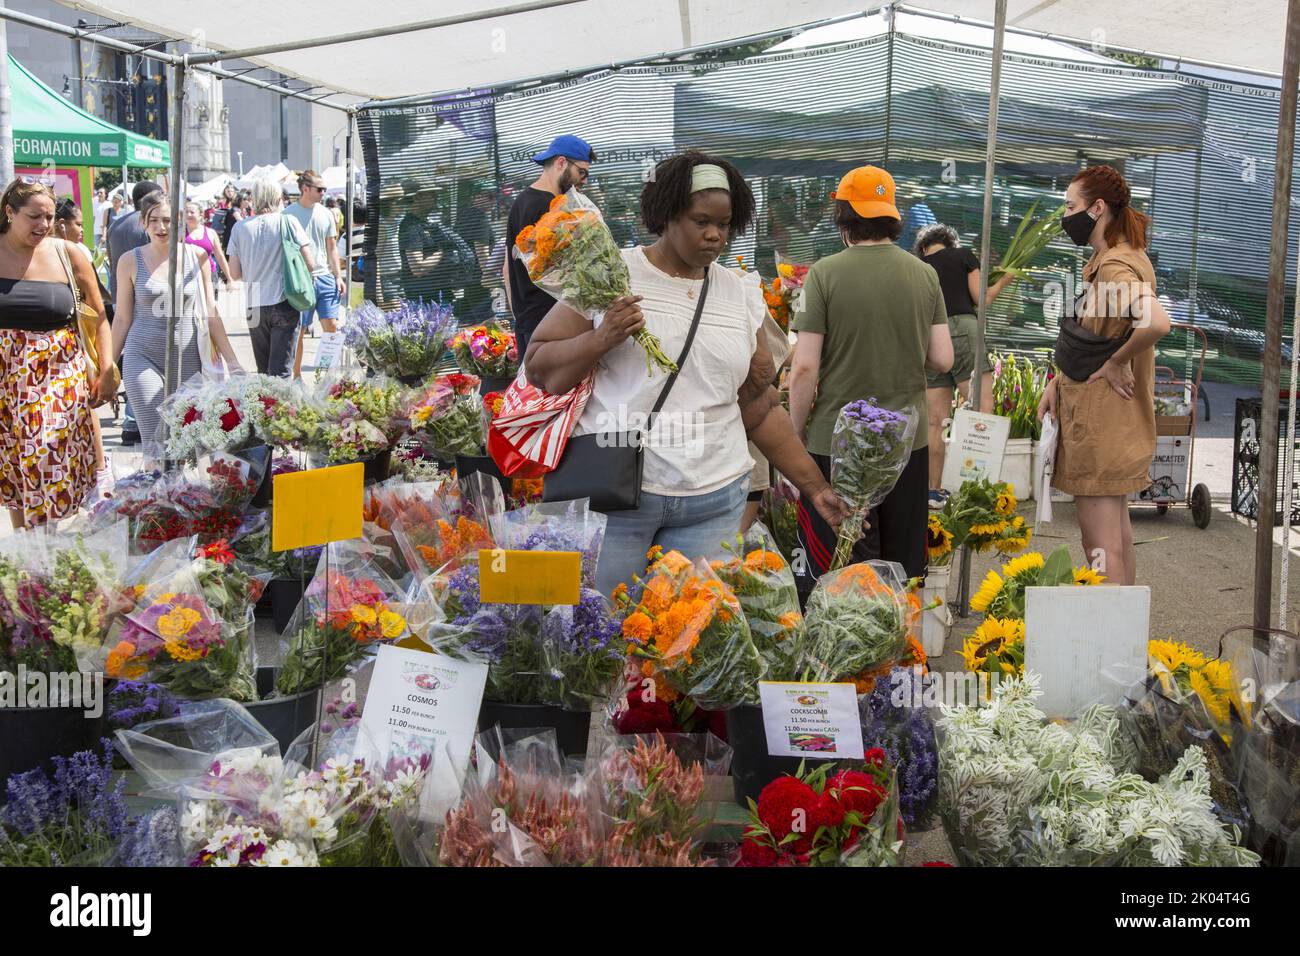 La gente va de compras durante el verano al Farmers Market en Grand Army Plaza en Prospect Park, Brooklyn, Nueva York. Decidir qué ramo de flores comprar en el mercado. Foto de stock